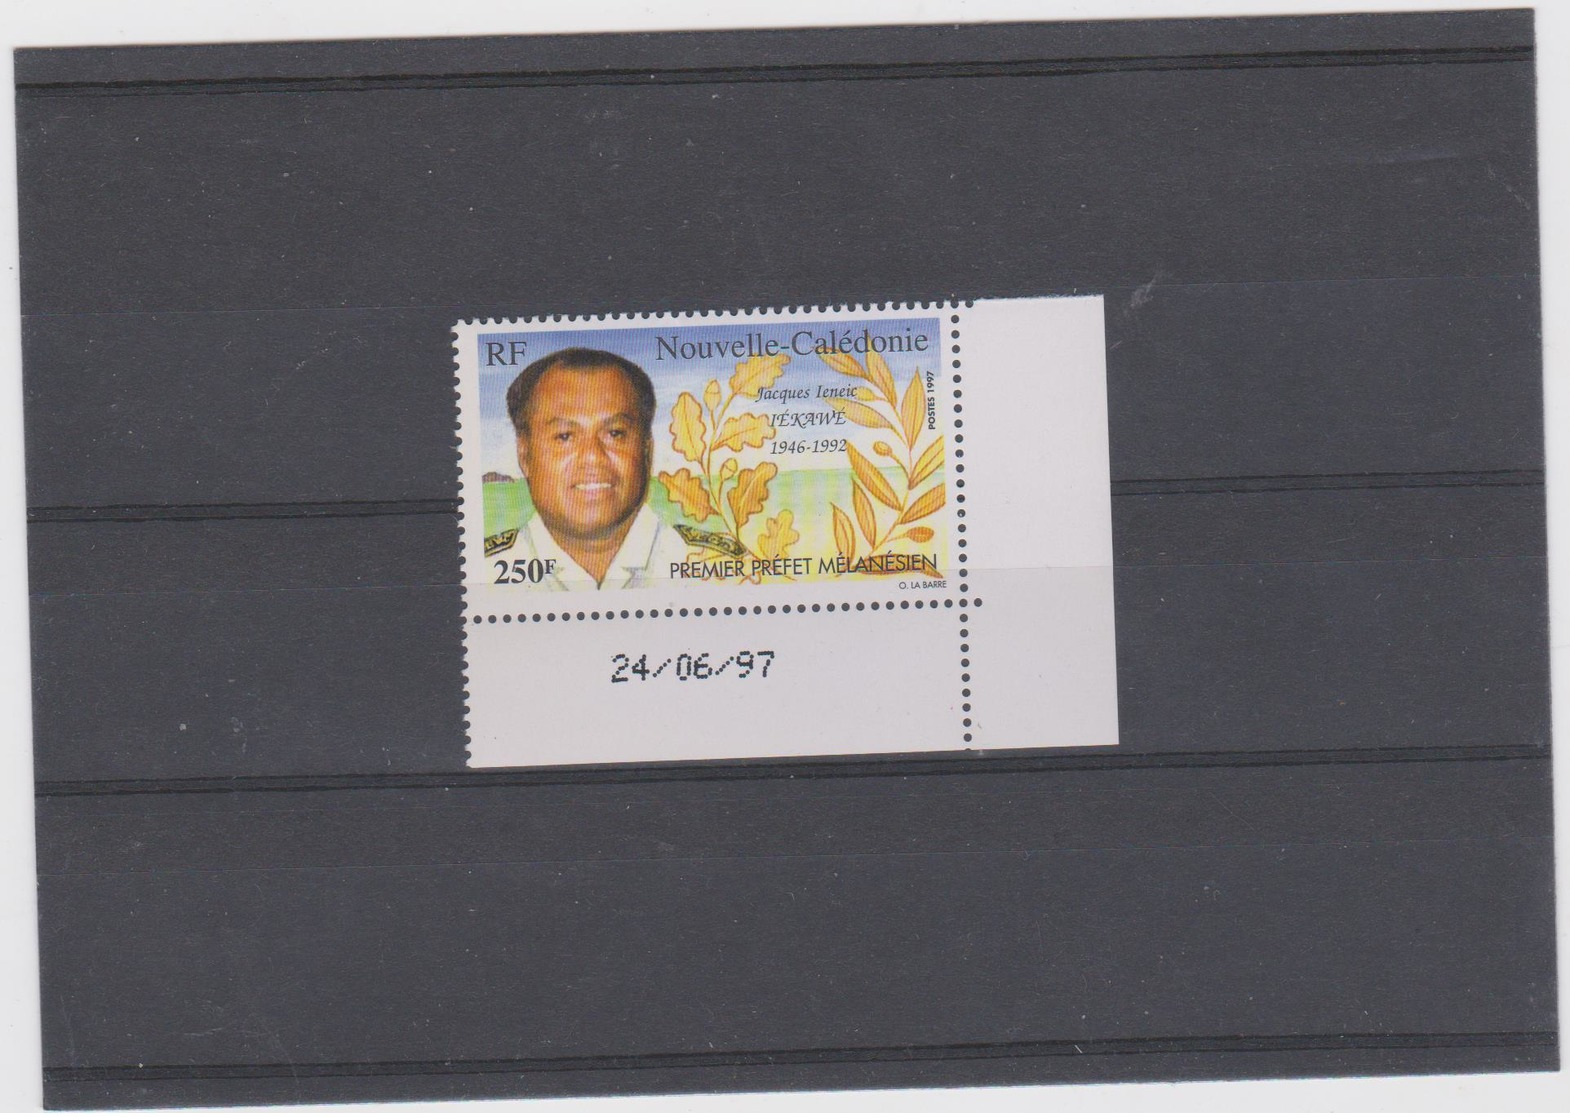 NOUVELLE CALEDONIE 1 T Neuf Xx N°YT 734 - DATE 24/06/97 - Jacques Ieneic IEKAWE Premier Prefet Mélanésien - Unused Stamps